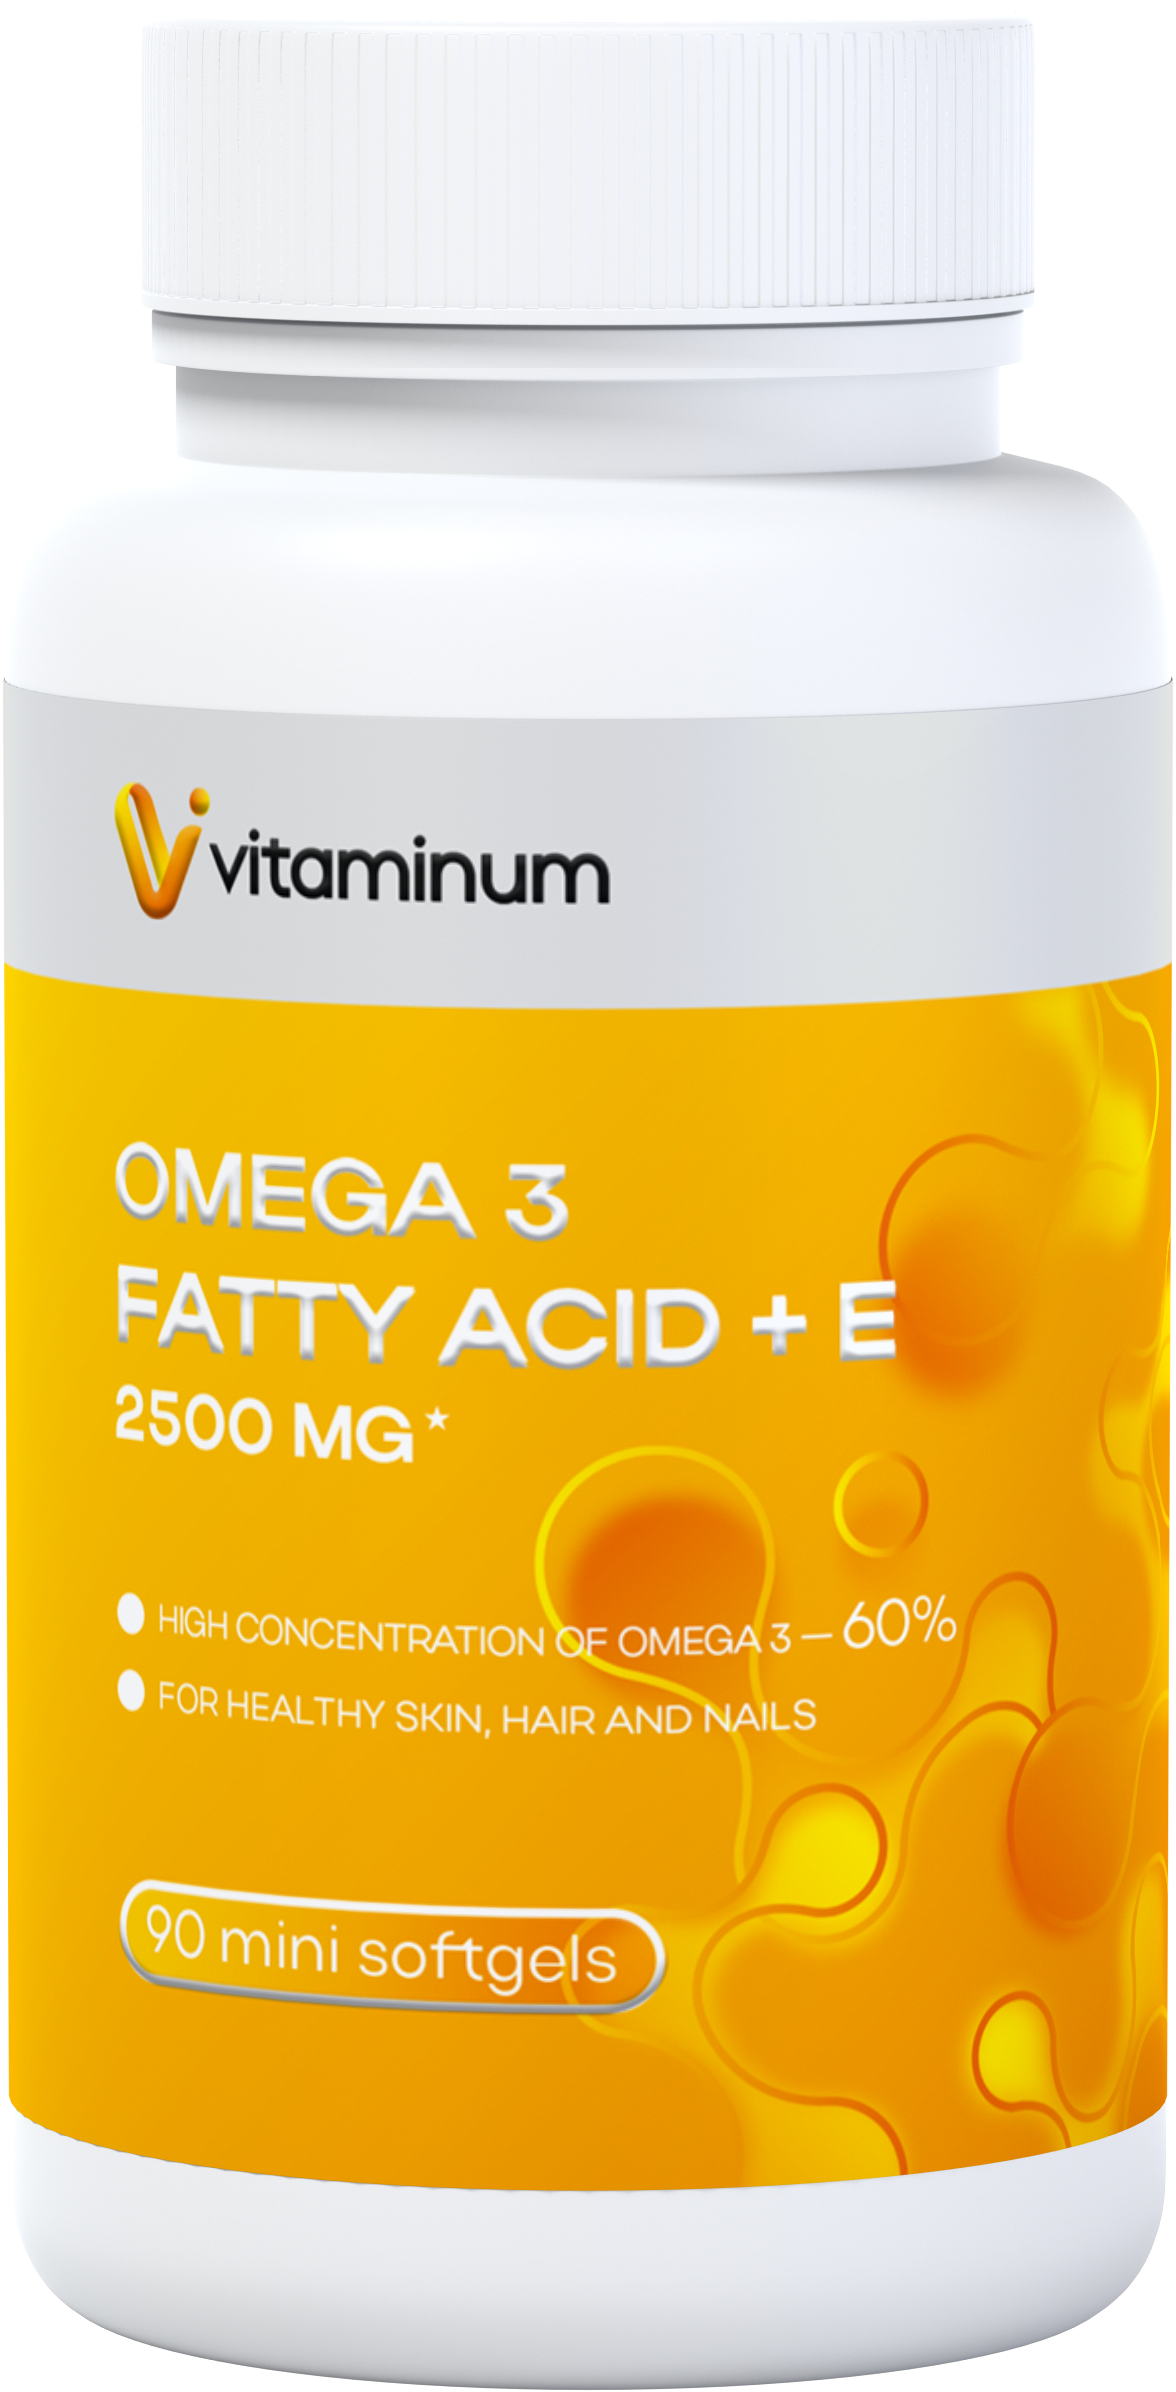  Vitaminum ОМЕГА 3 60% + витамин Е (2500 MG*) 90 капсул 700 мг   в Янауле